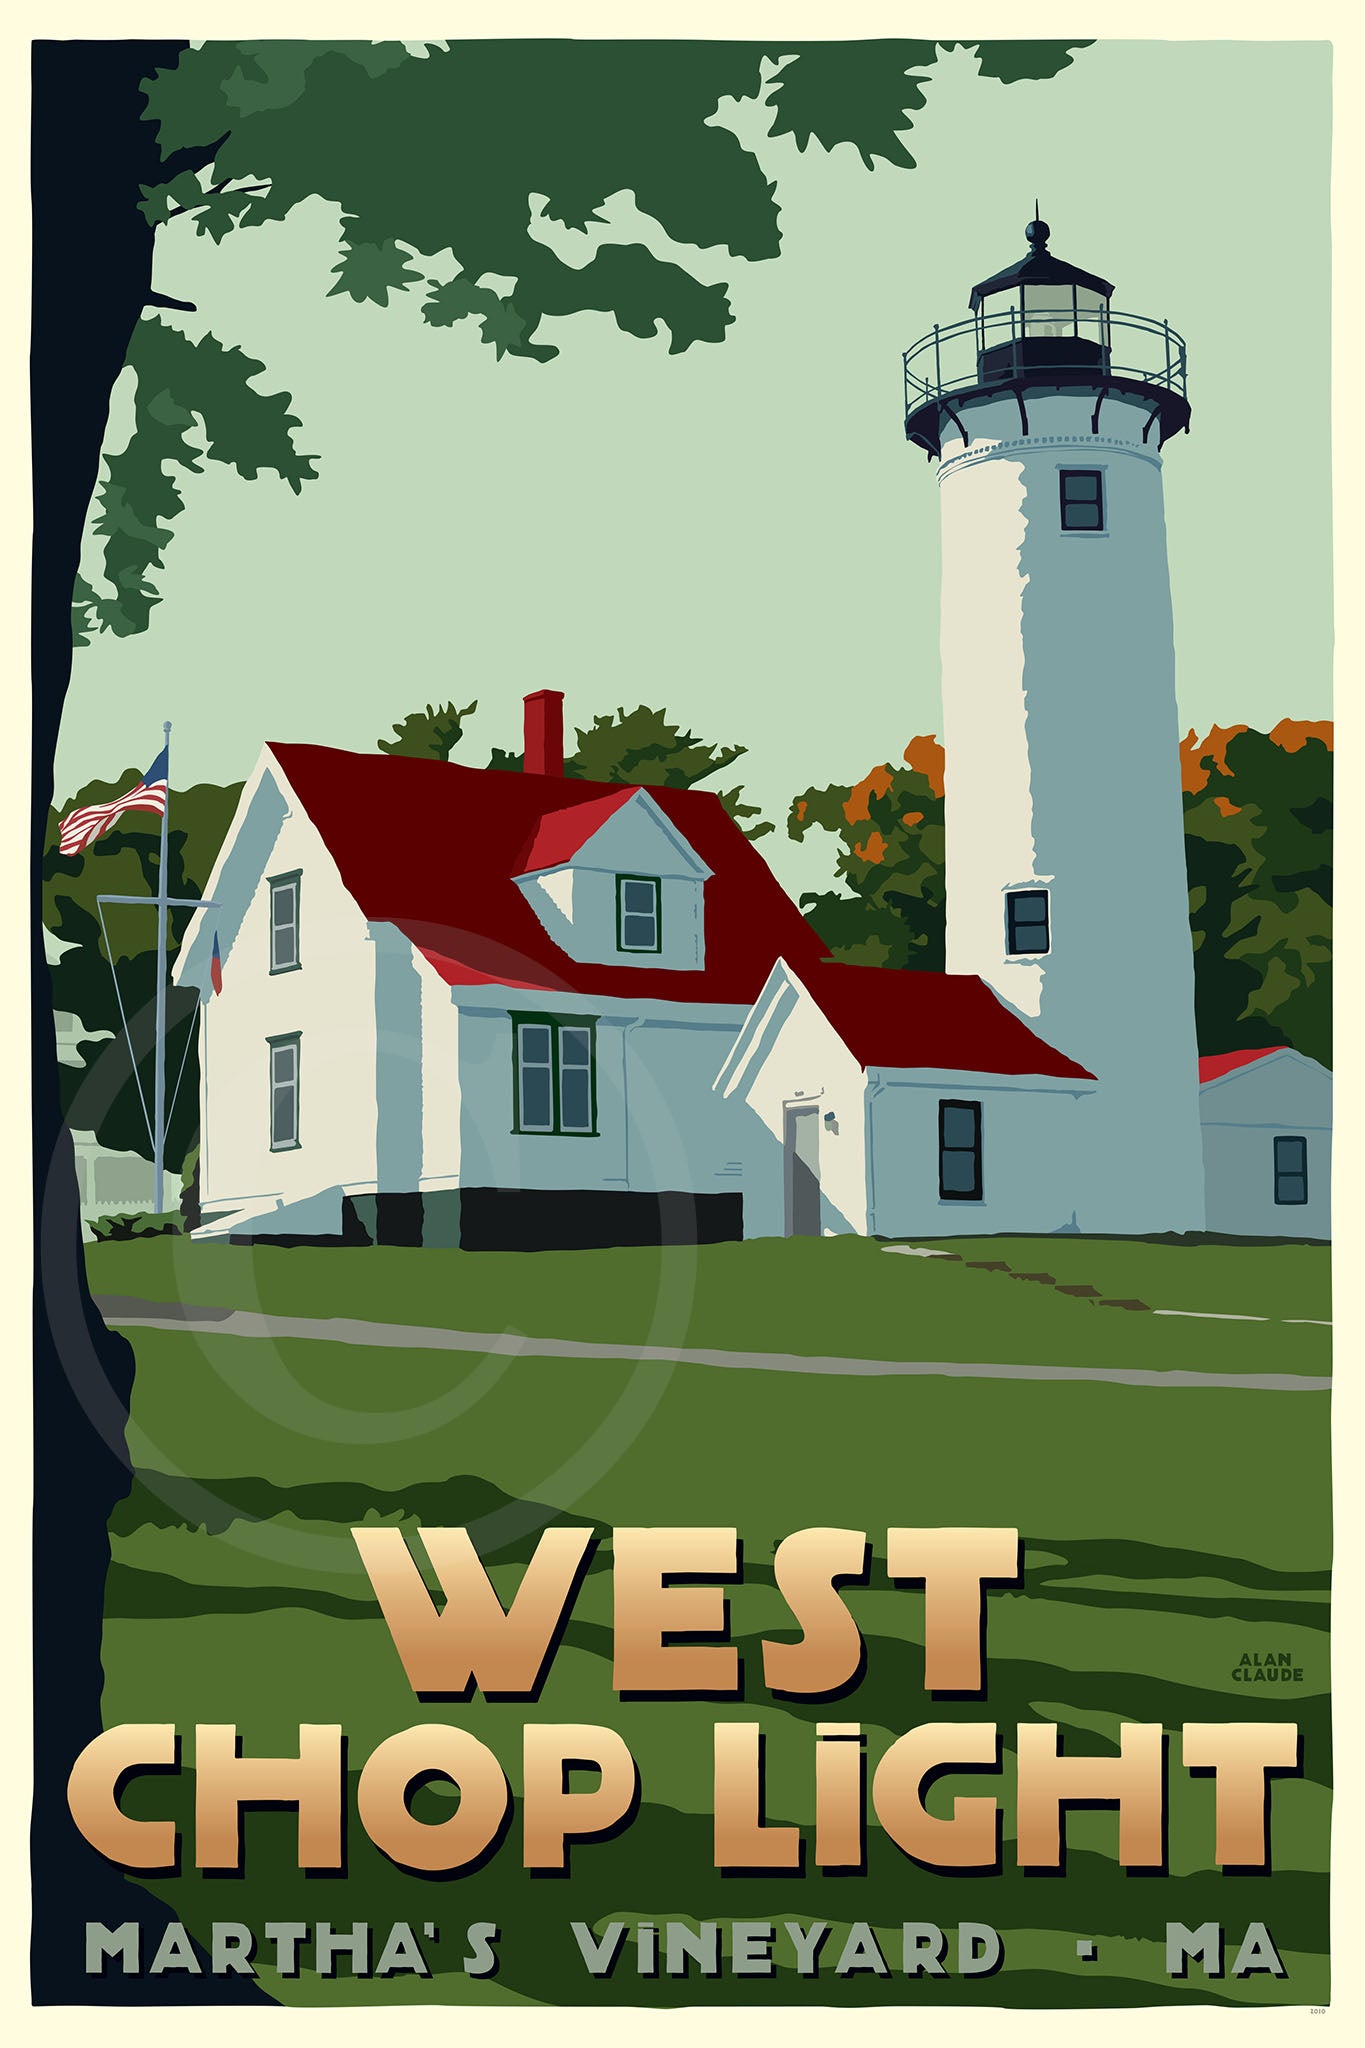 West Chop Light Art Print 36" x 53" Travel Poster By Alan Claude - Massachusetts